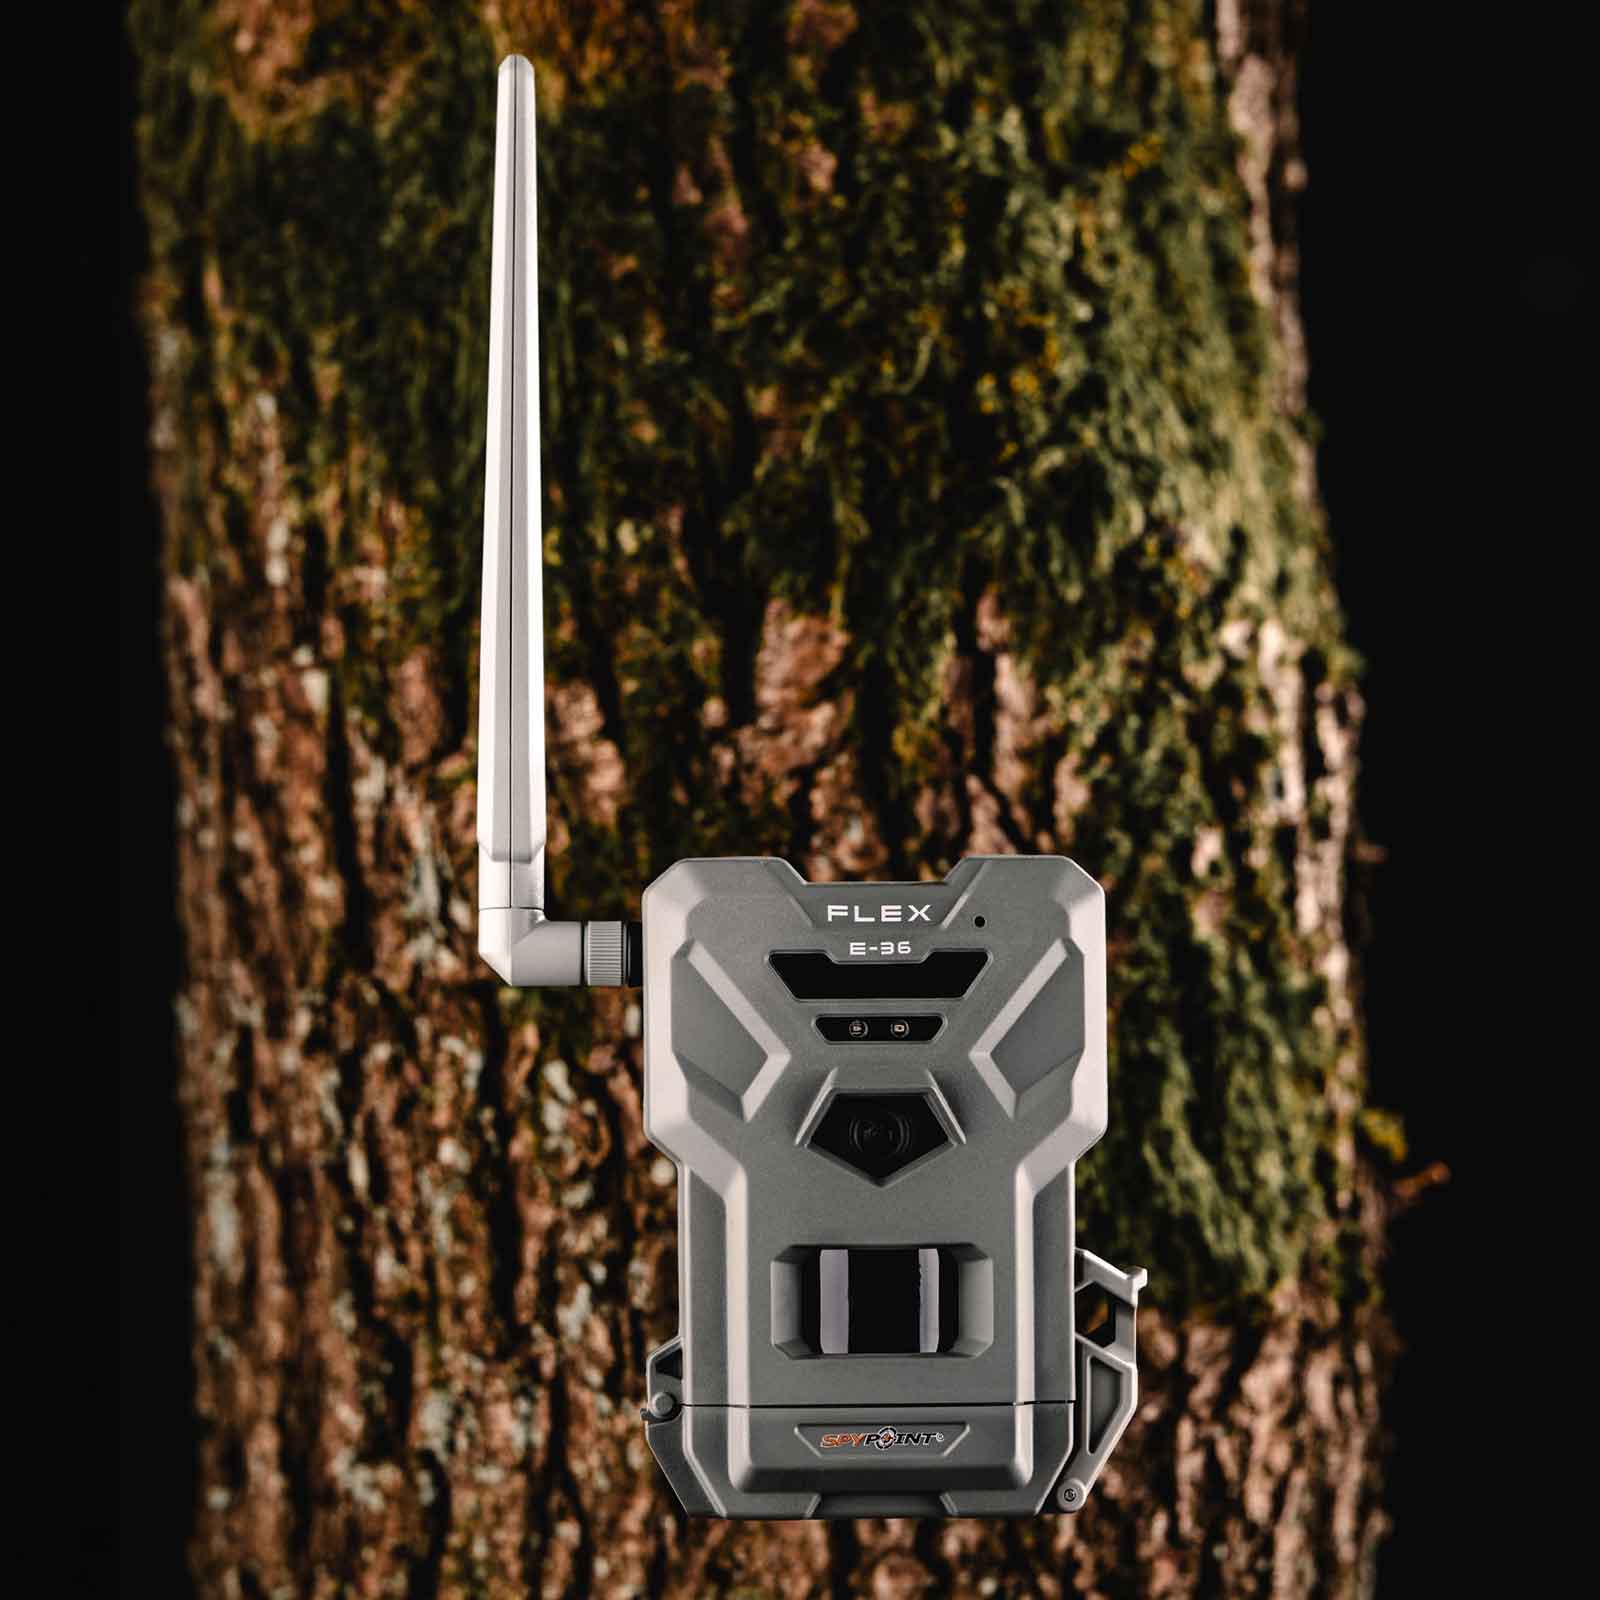 Spypoint Flex E-36 Trail Camera